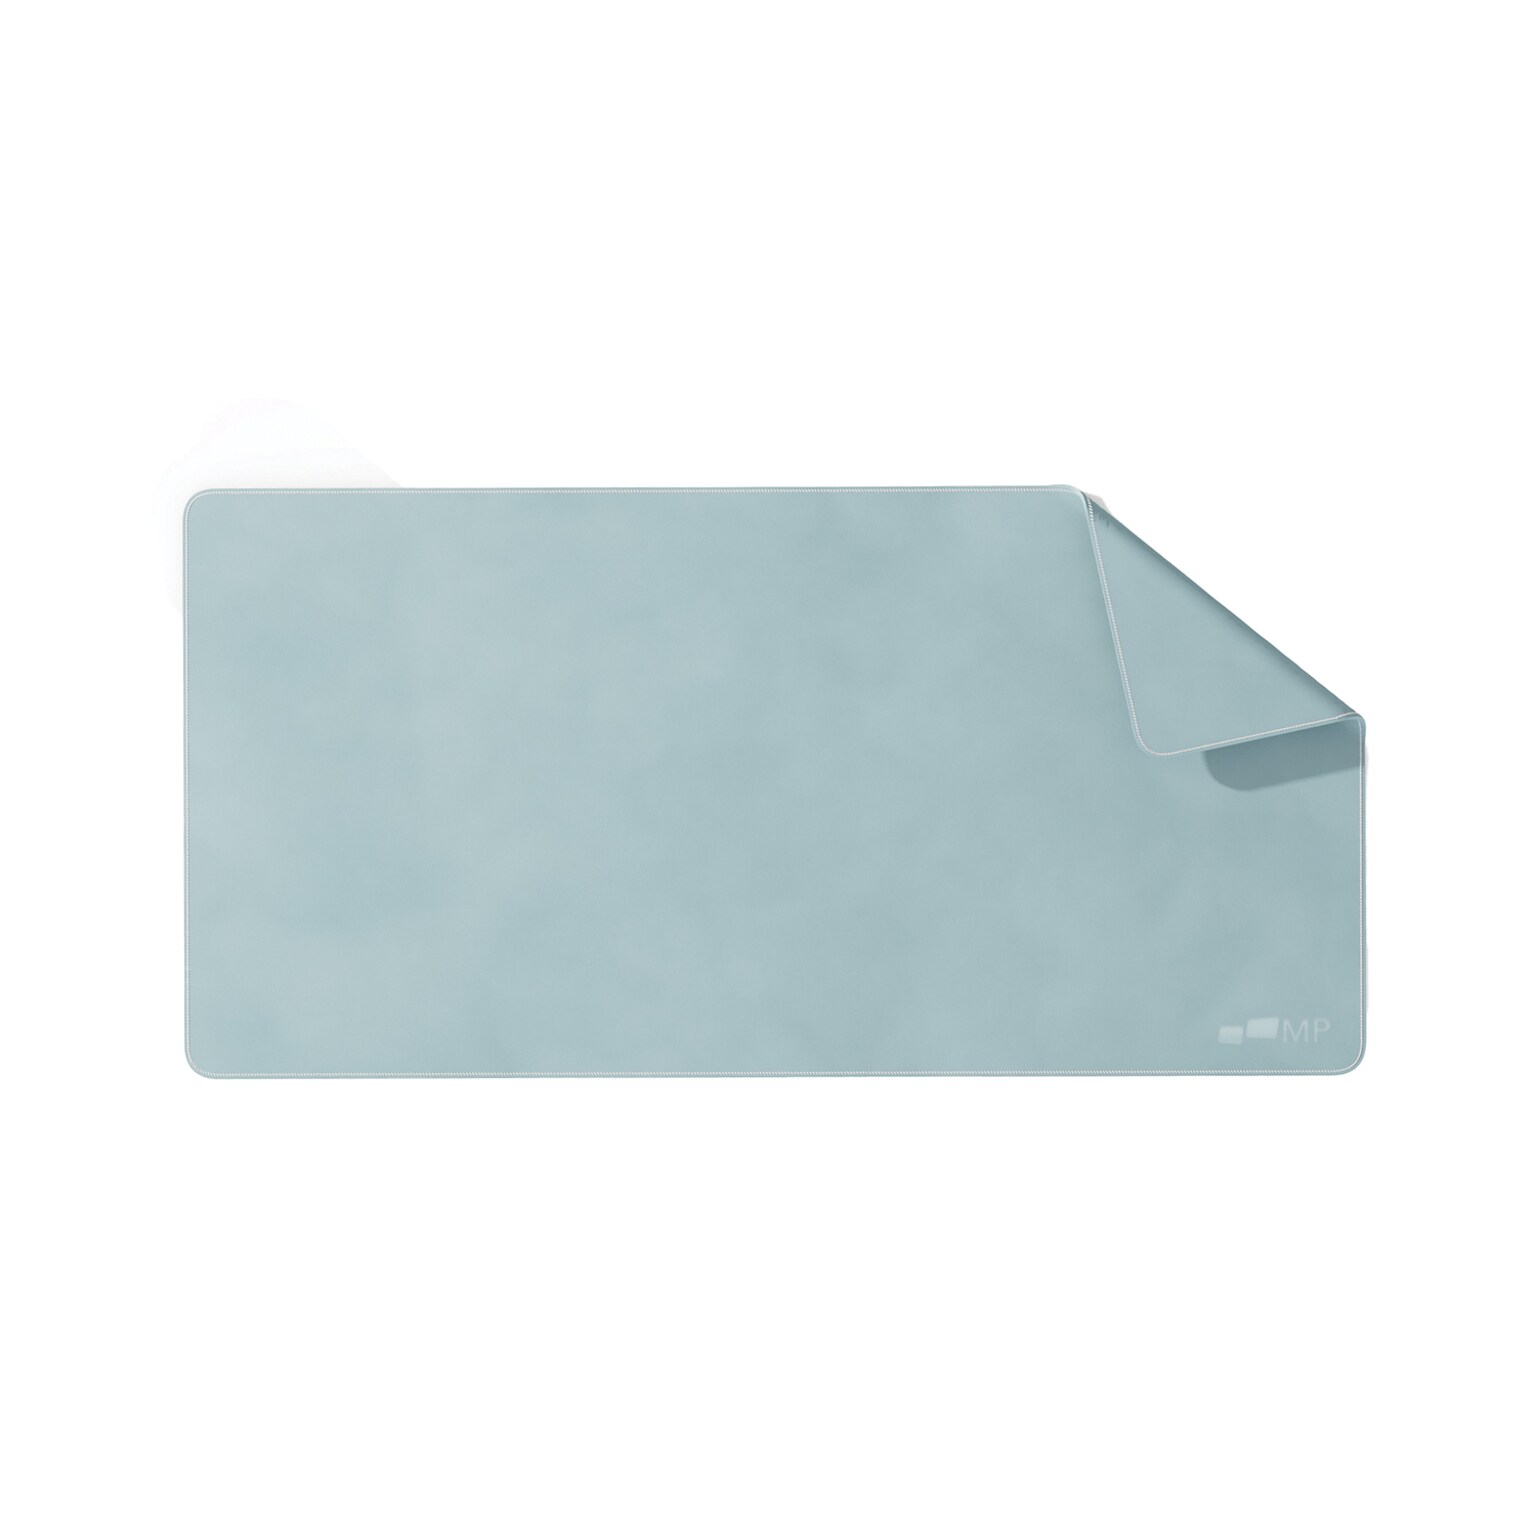 Mobile Pixels Inc. PU Leather Desk Mat, 31.5 x 15.75, Haze Blue (115-1001P05)